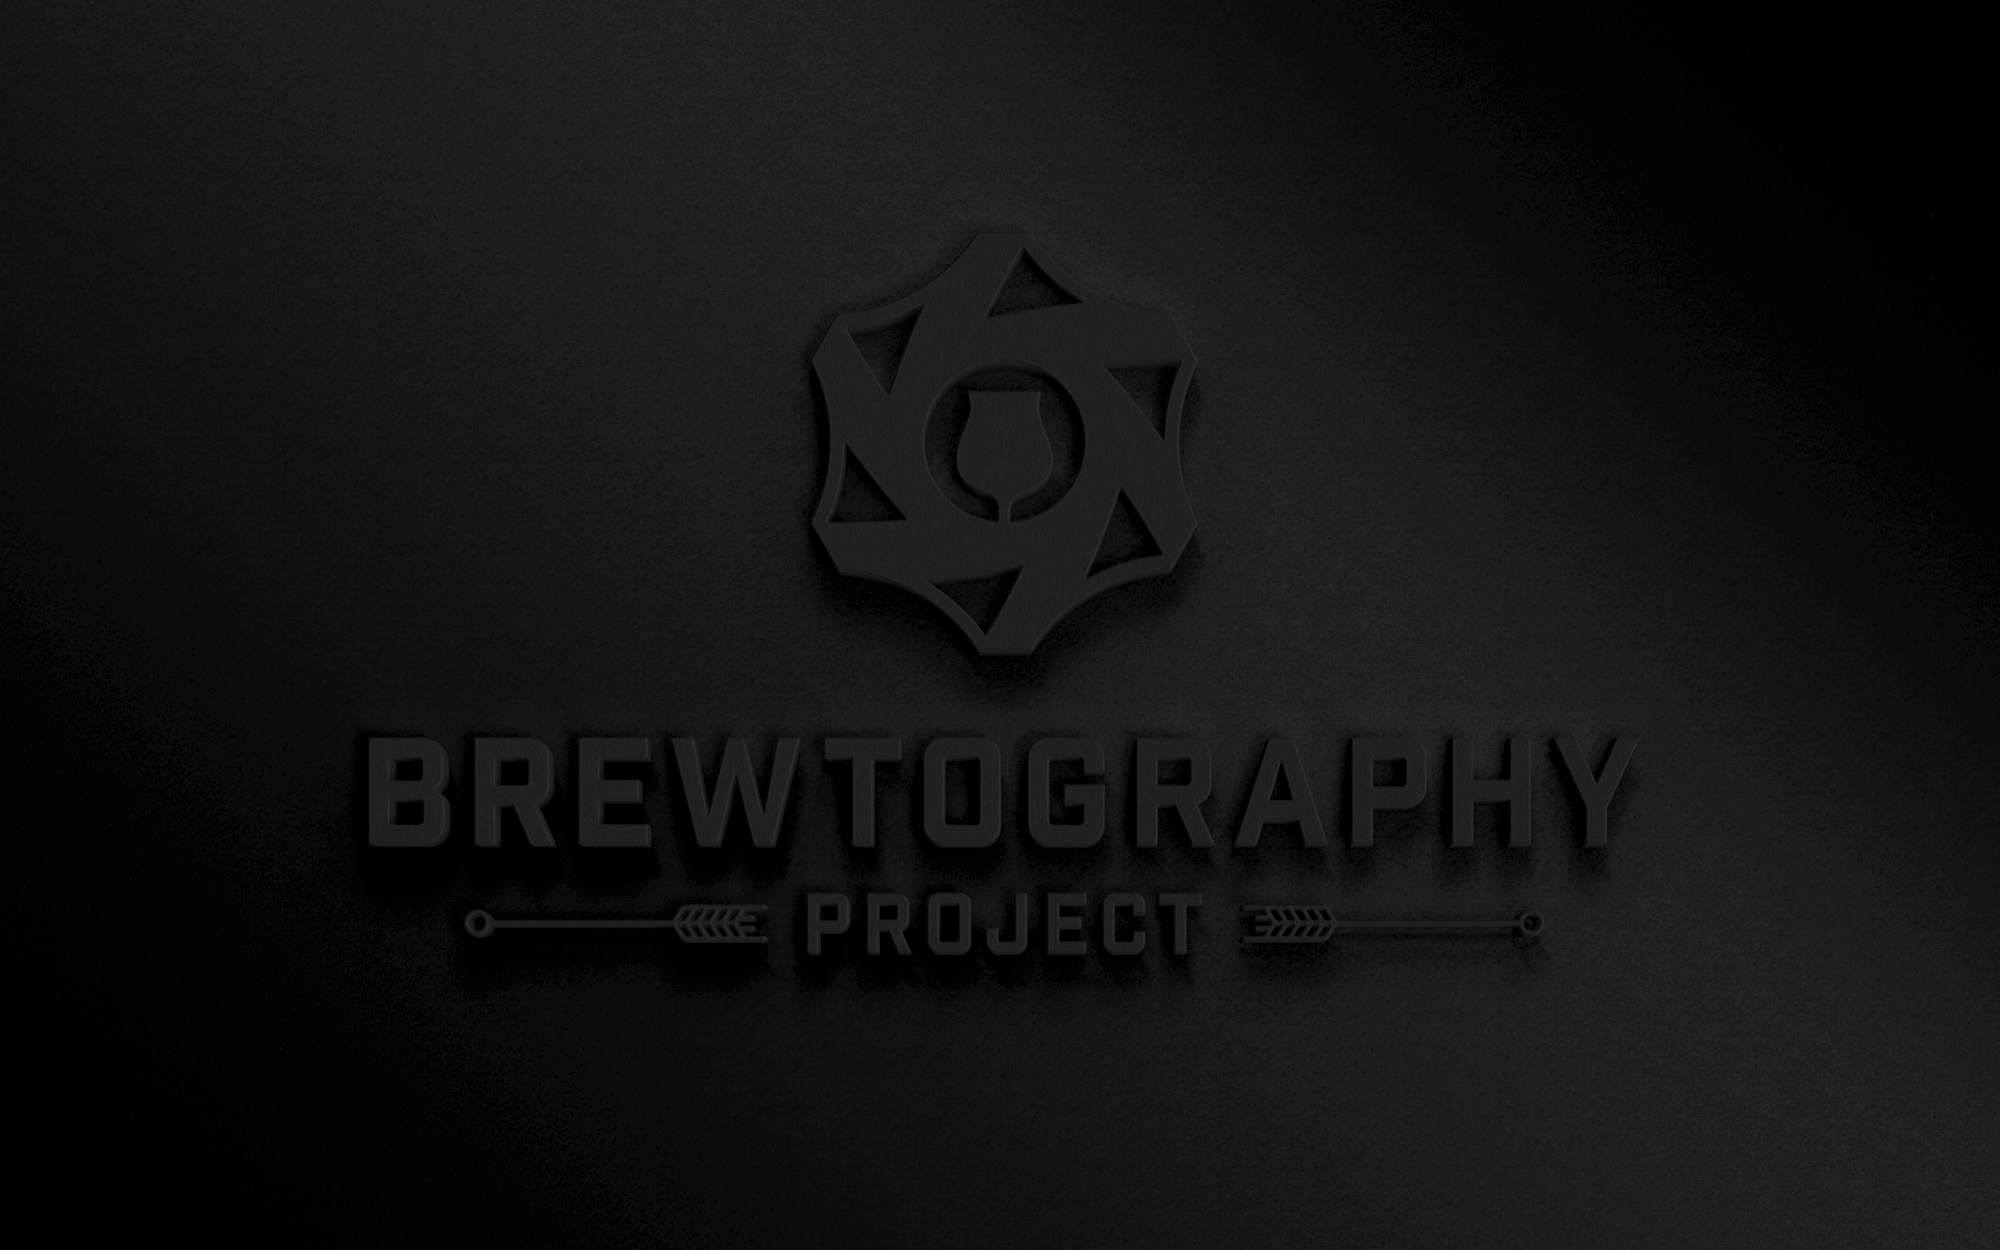 BrewtographyProject_LogoAnnouncement.jpg